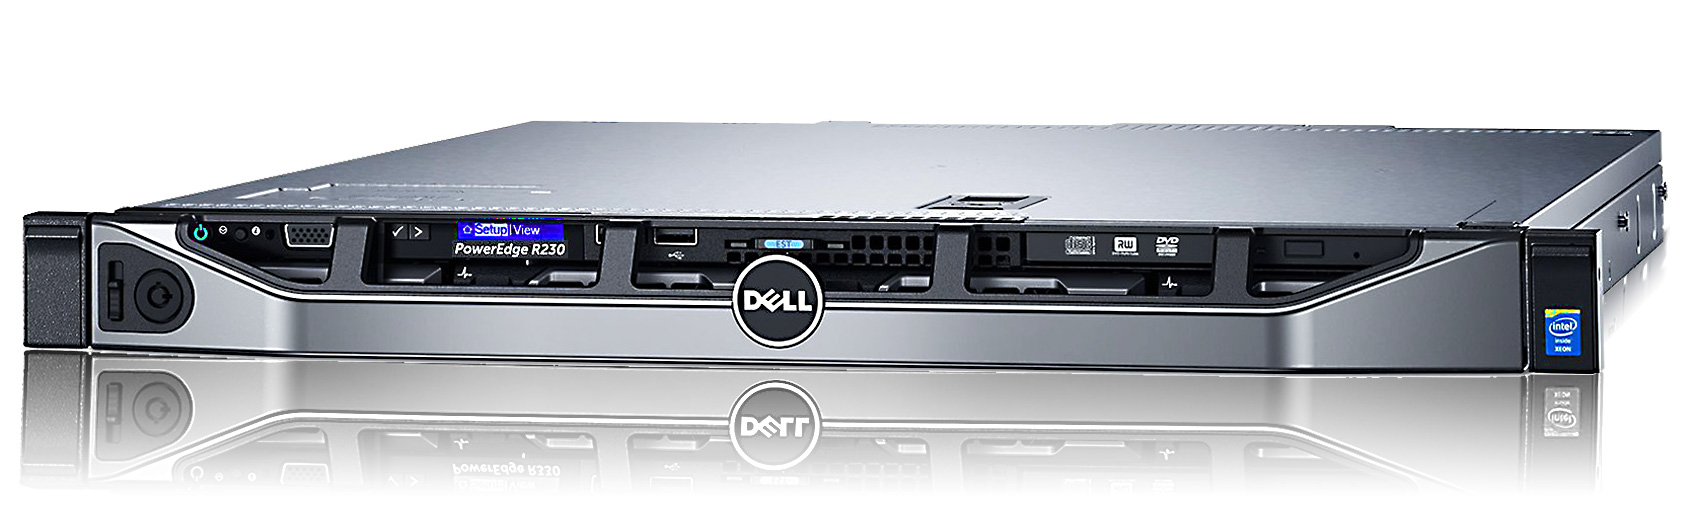 Сервер Dell EMC PowerEdge R230 начального уровня 1U Rack Server R230 intel xeon e3 rackmount dell servidor серверные решения 1с серверы купить цена